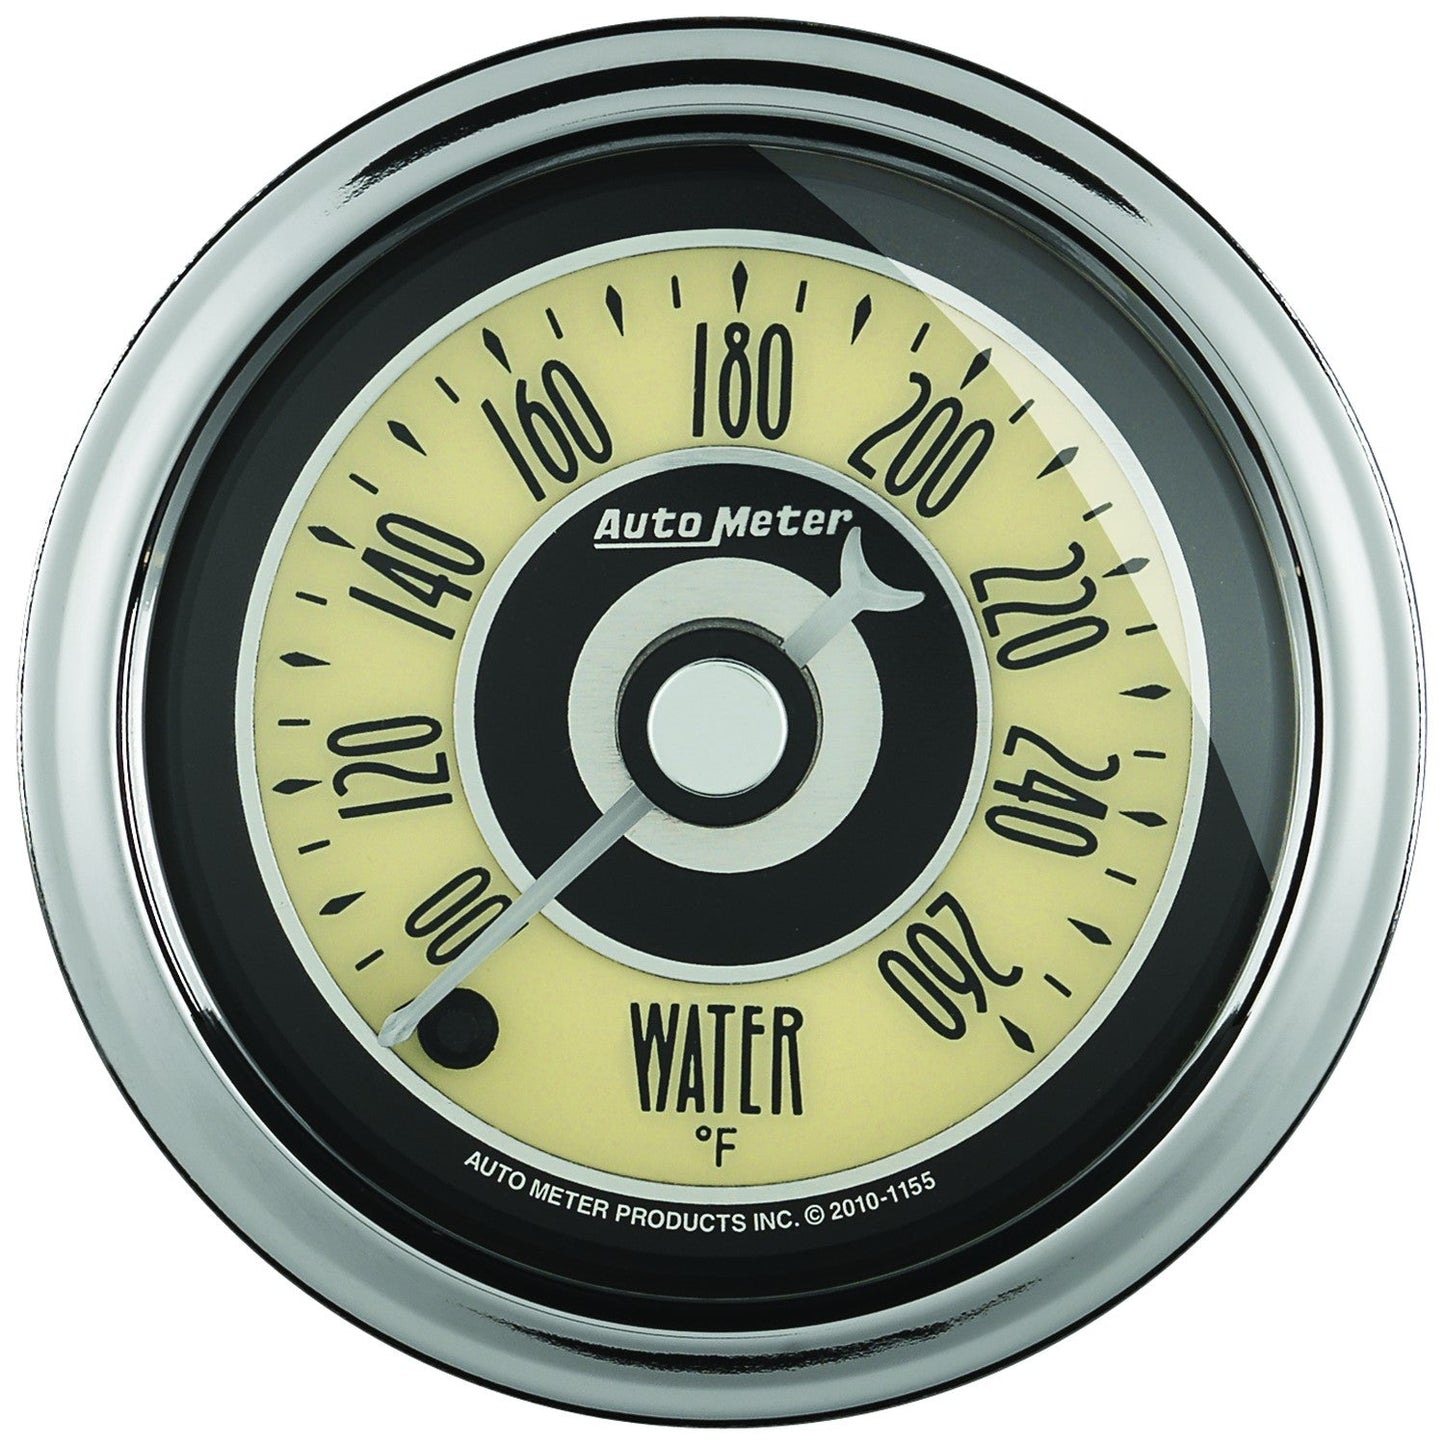 AutoMeter - 2-1/16" TEMPERATURA DA ÁGUA, 100-260 °F, MOTOR DE PASSO, CRUISER AD (1154) 